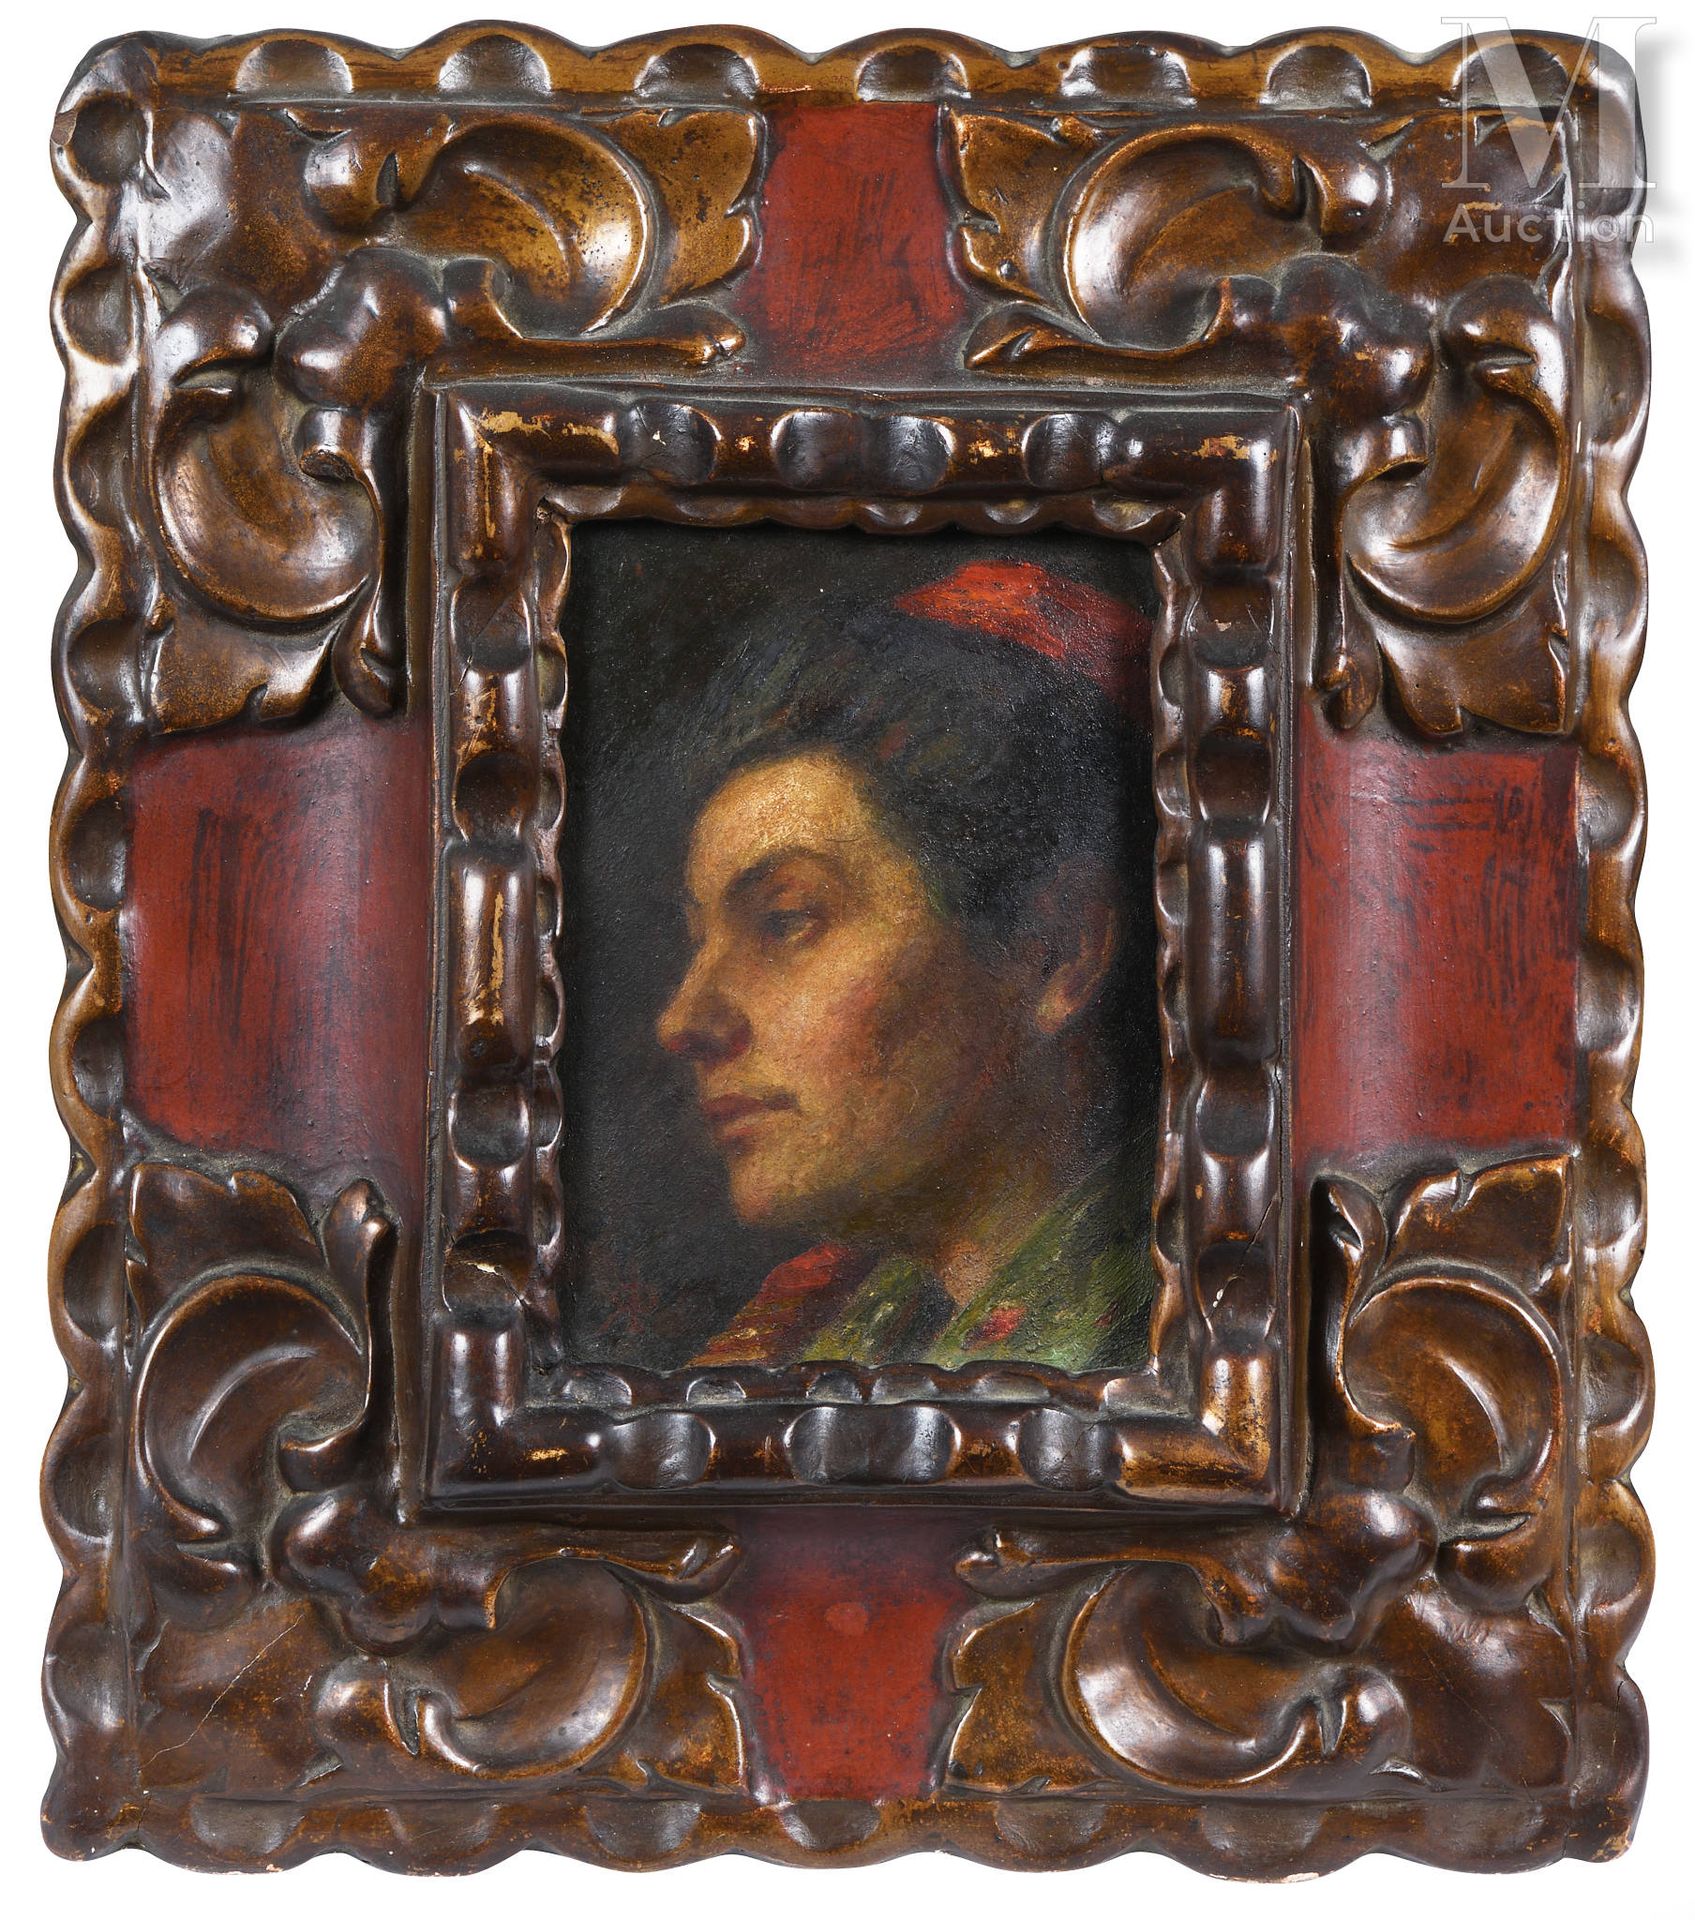 Ecole FRANCAISE du XIXème siècle Portrait d’homme
Peinture sur bois
15,5 x 11cm